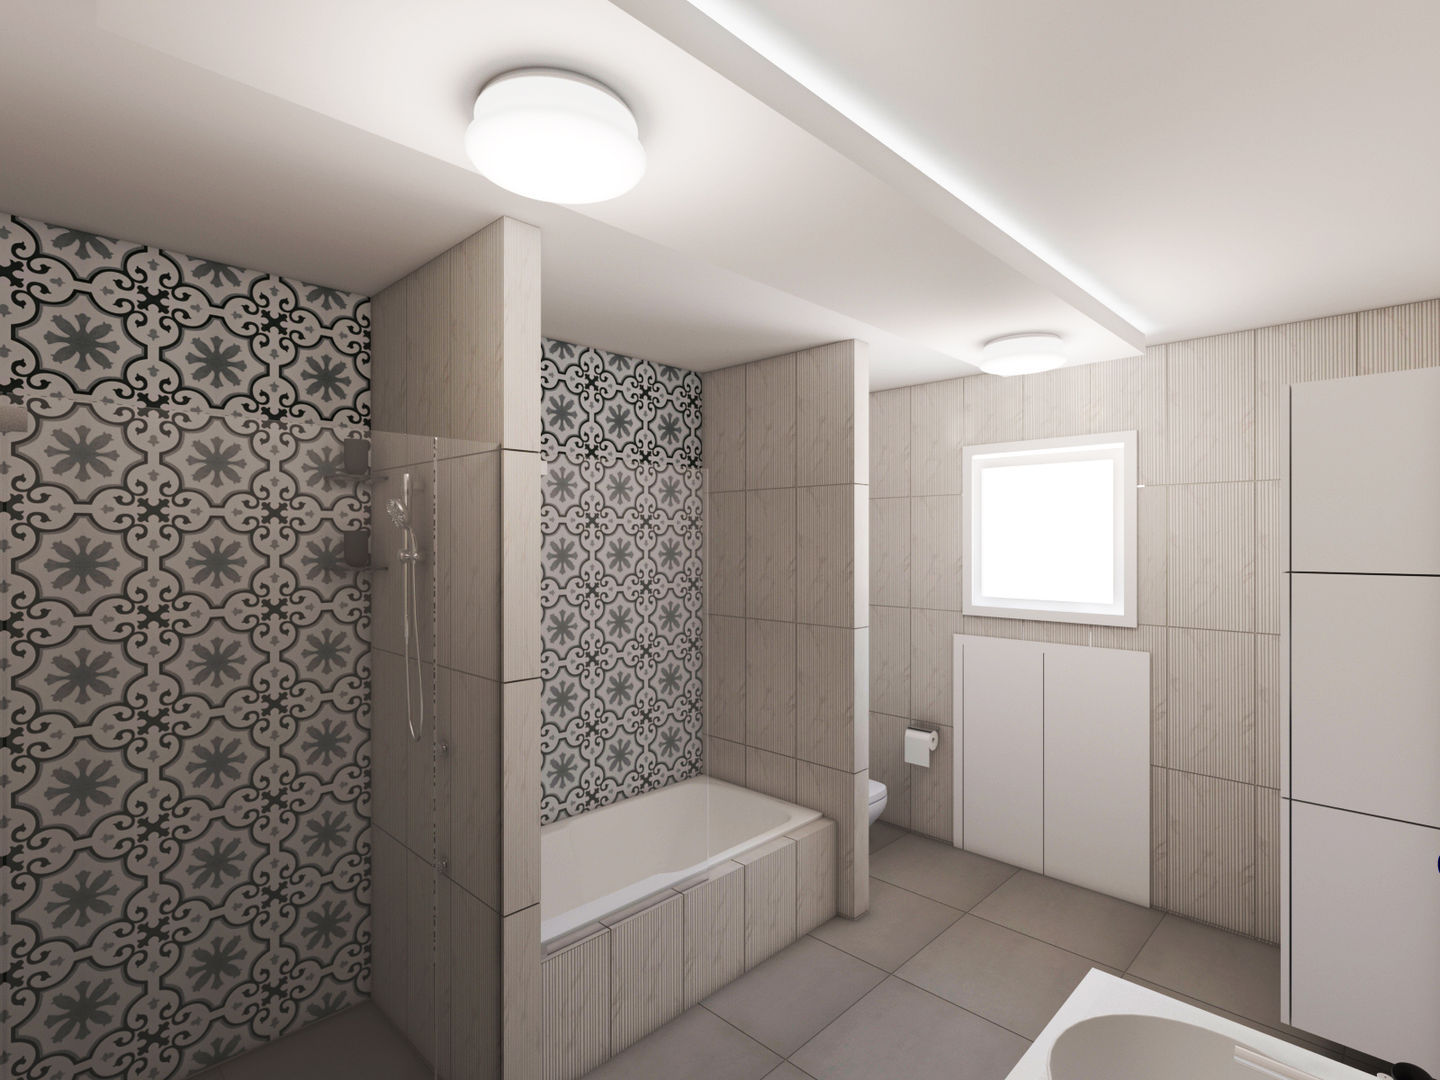 Banyo Tadilat Tasarımı, Sanal Mimarlık Hizmetleri Sanal Mimarlık Hizmetleri Moderne Badezimmer